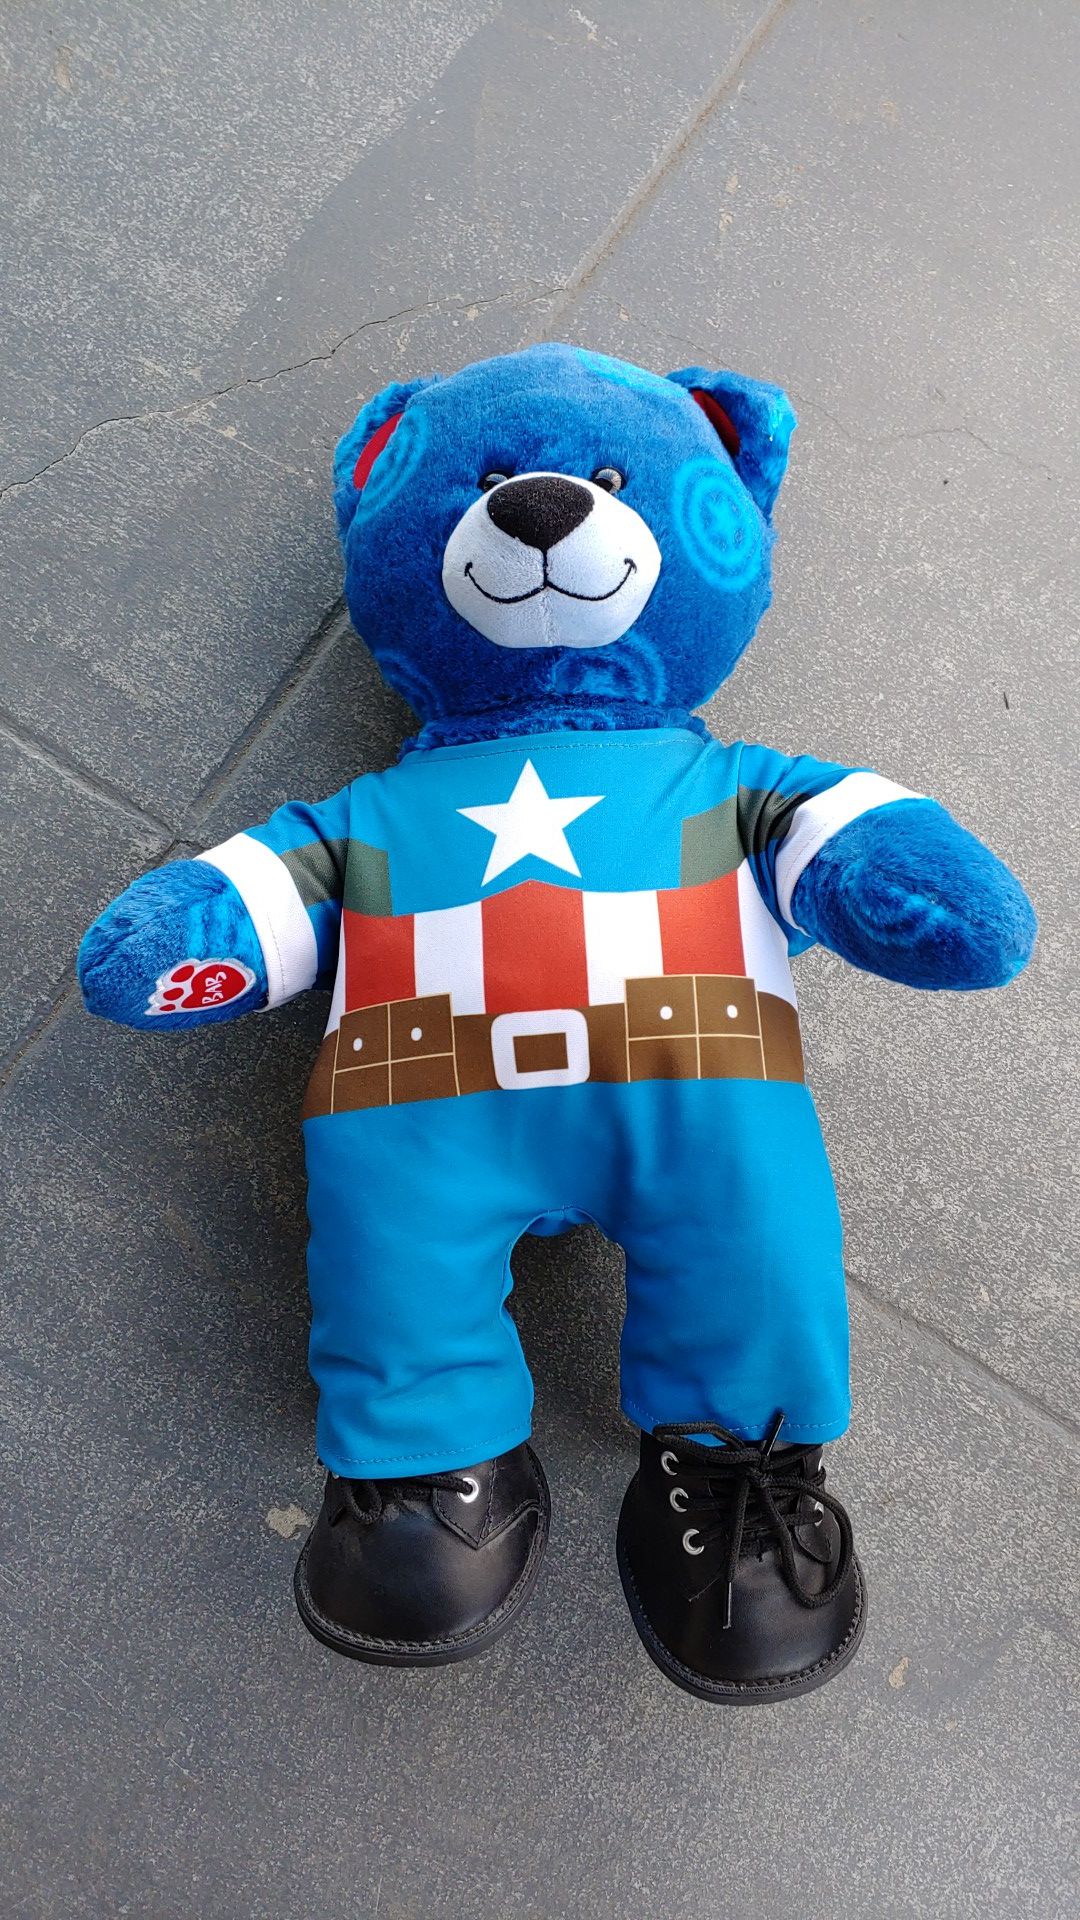 Captain America build a bear